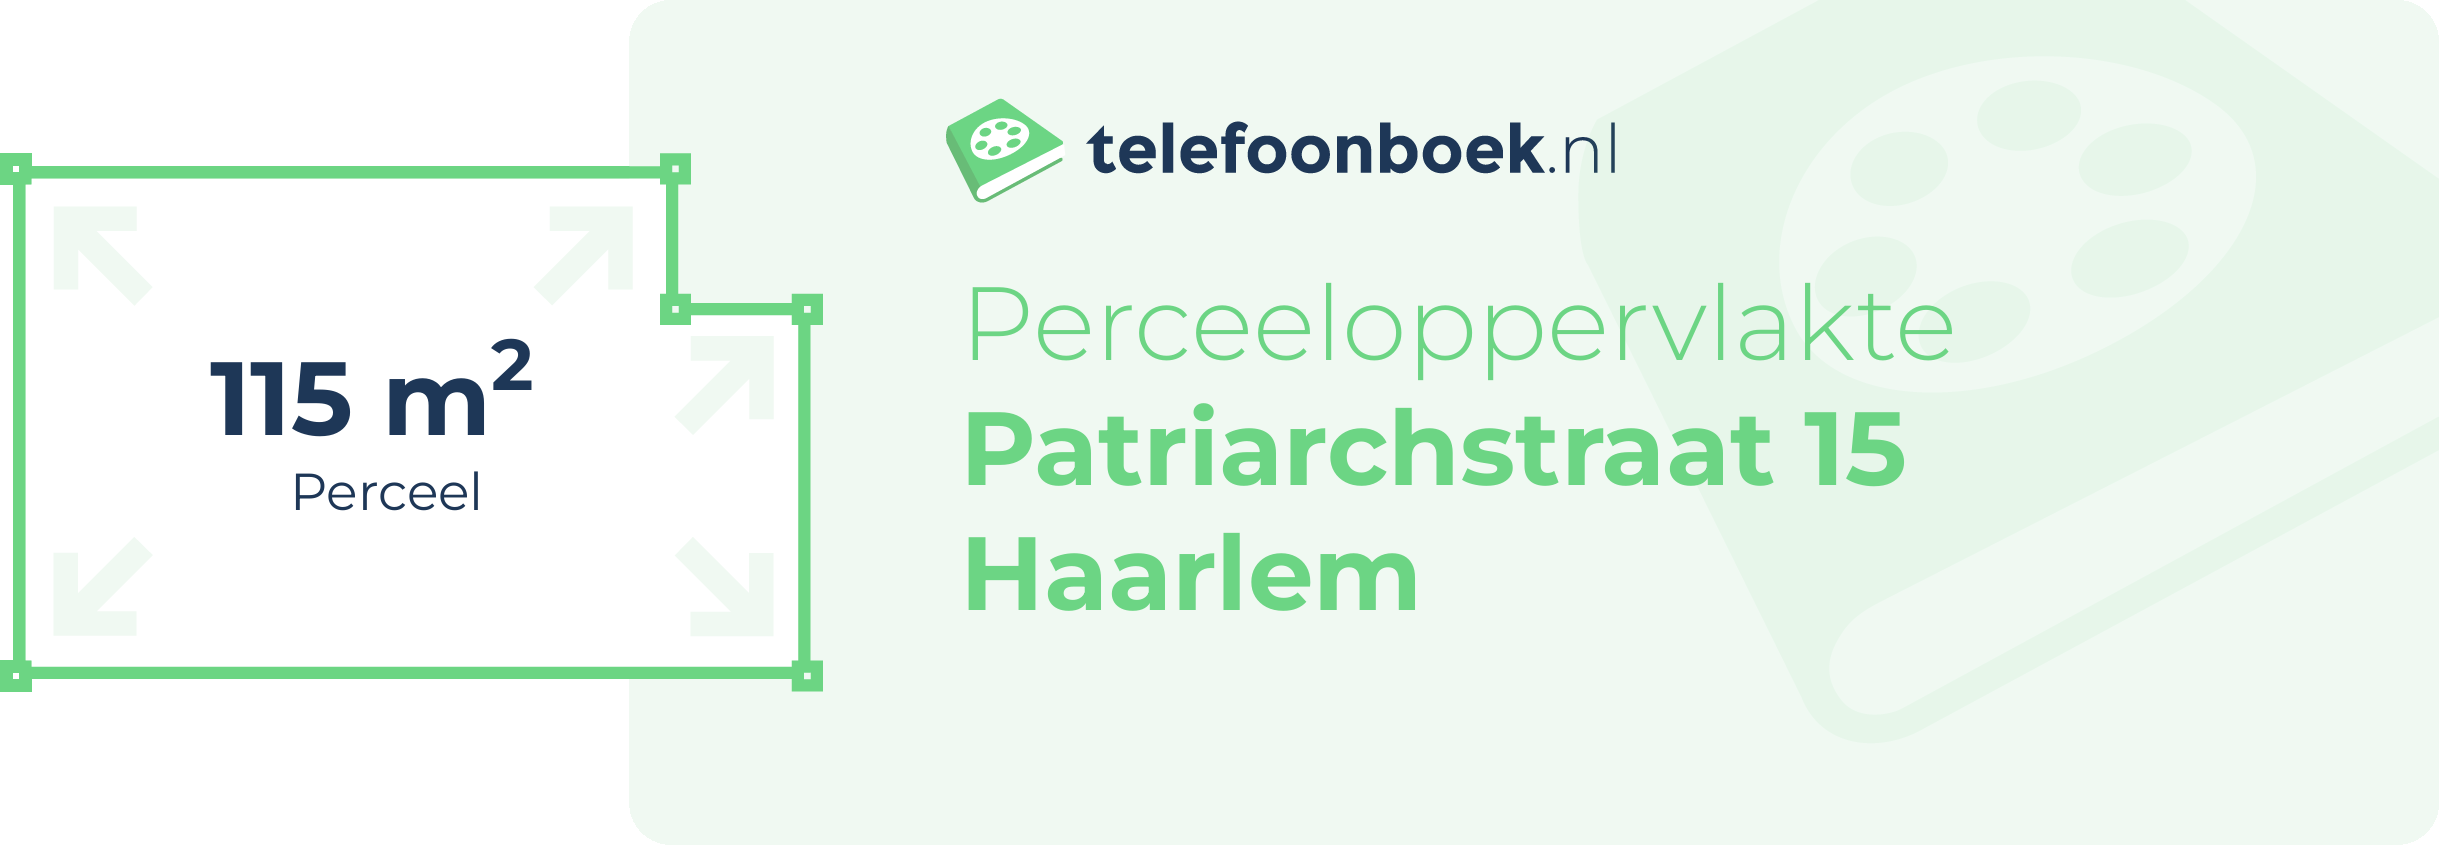 Perceeloppervlakte Patriarchstraat 15 Haarlem